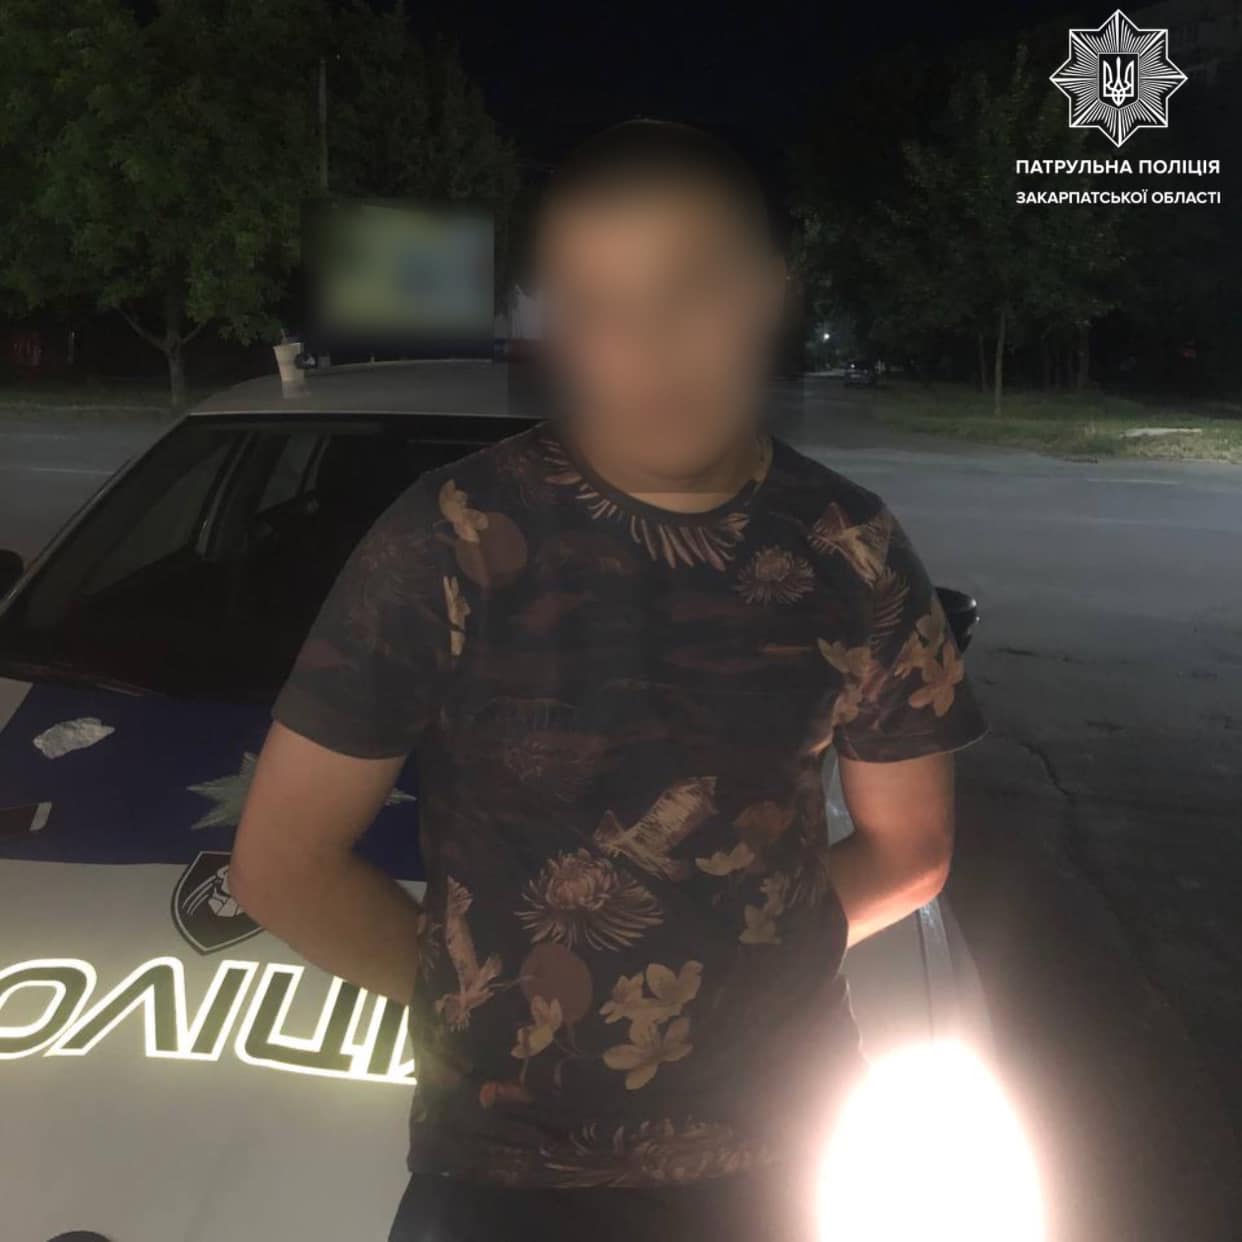 Вчора, 9 липня, у Мукачеві правоохоронці затримали чоловіка, у якого виявили речовину схожу на наркотичну.